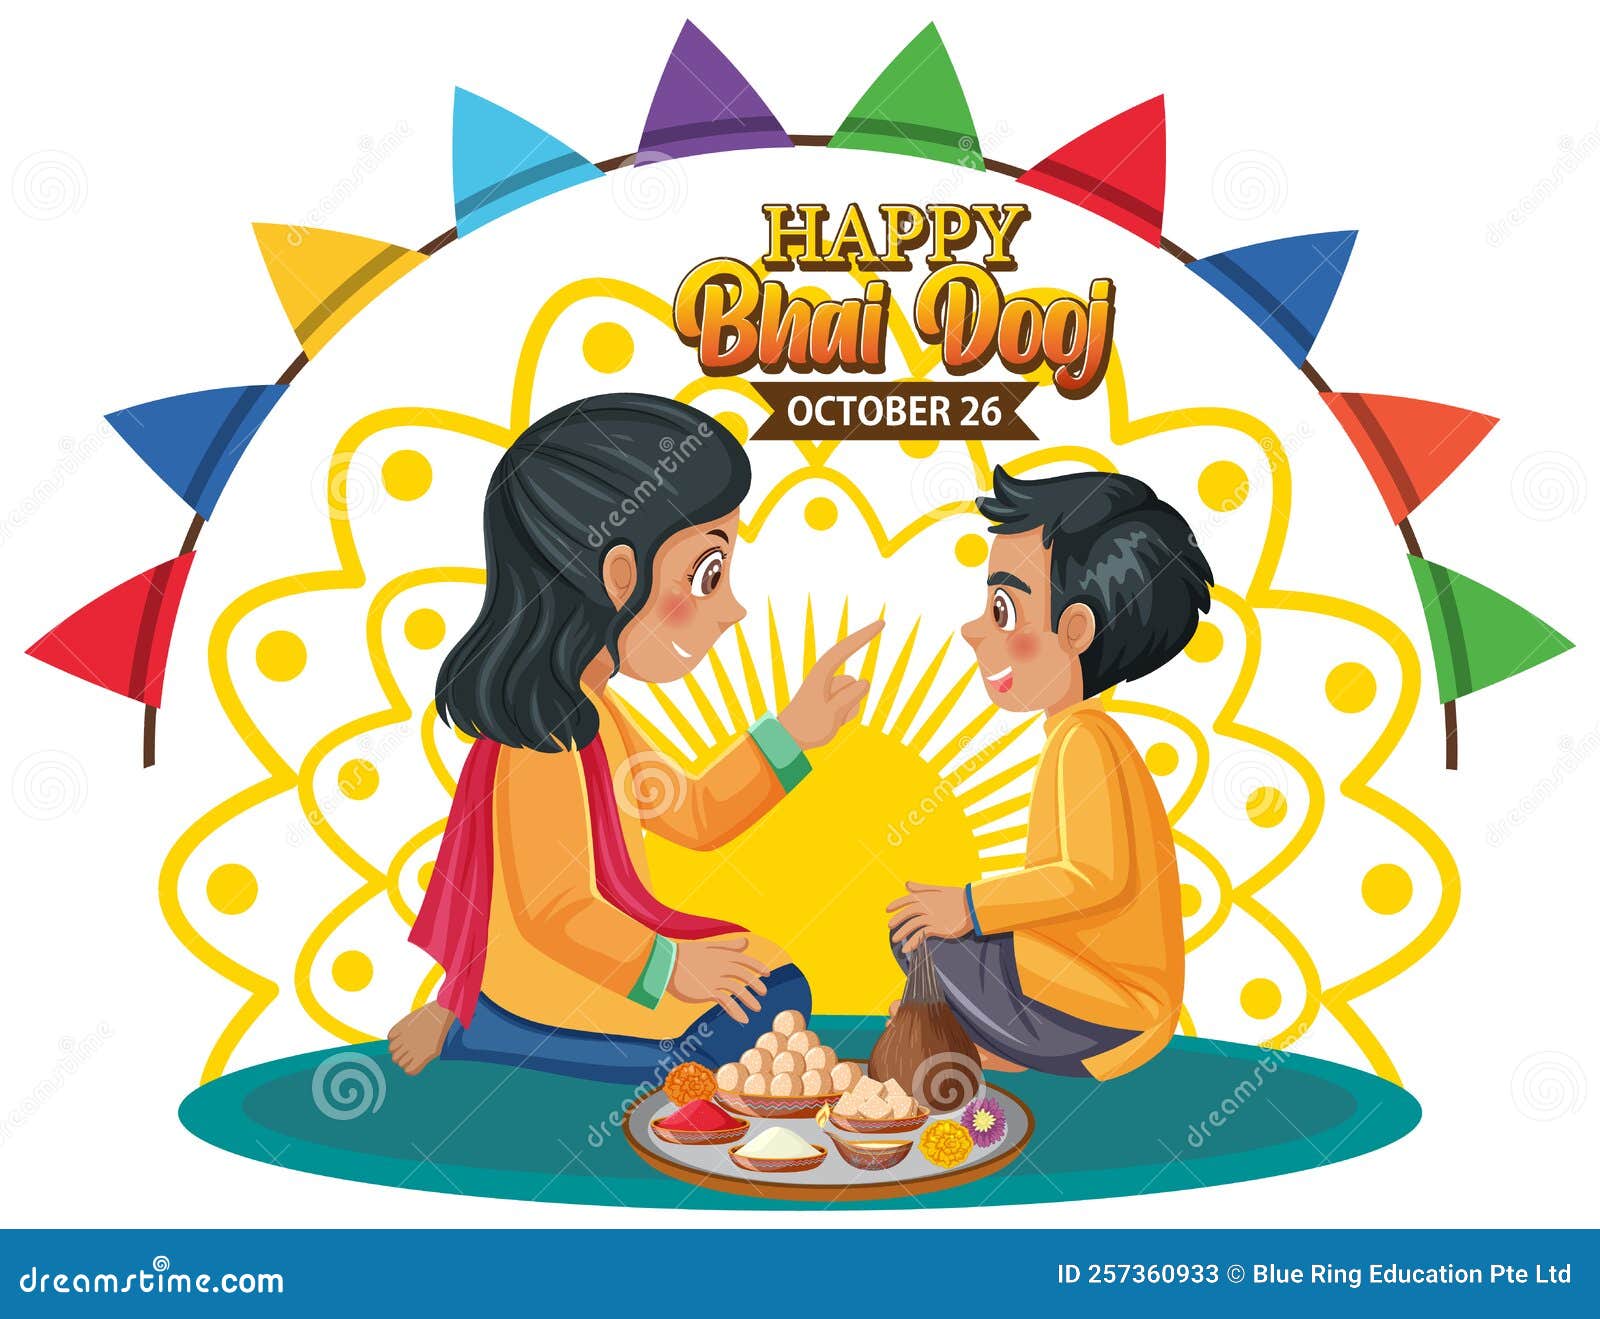 Bhai Duj 9 Coloring Page for Kids  Free Bhai Dooj Printable Coloring Pages  Online for Kids  ColoringPages101com  Coloring Pages for Kids